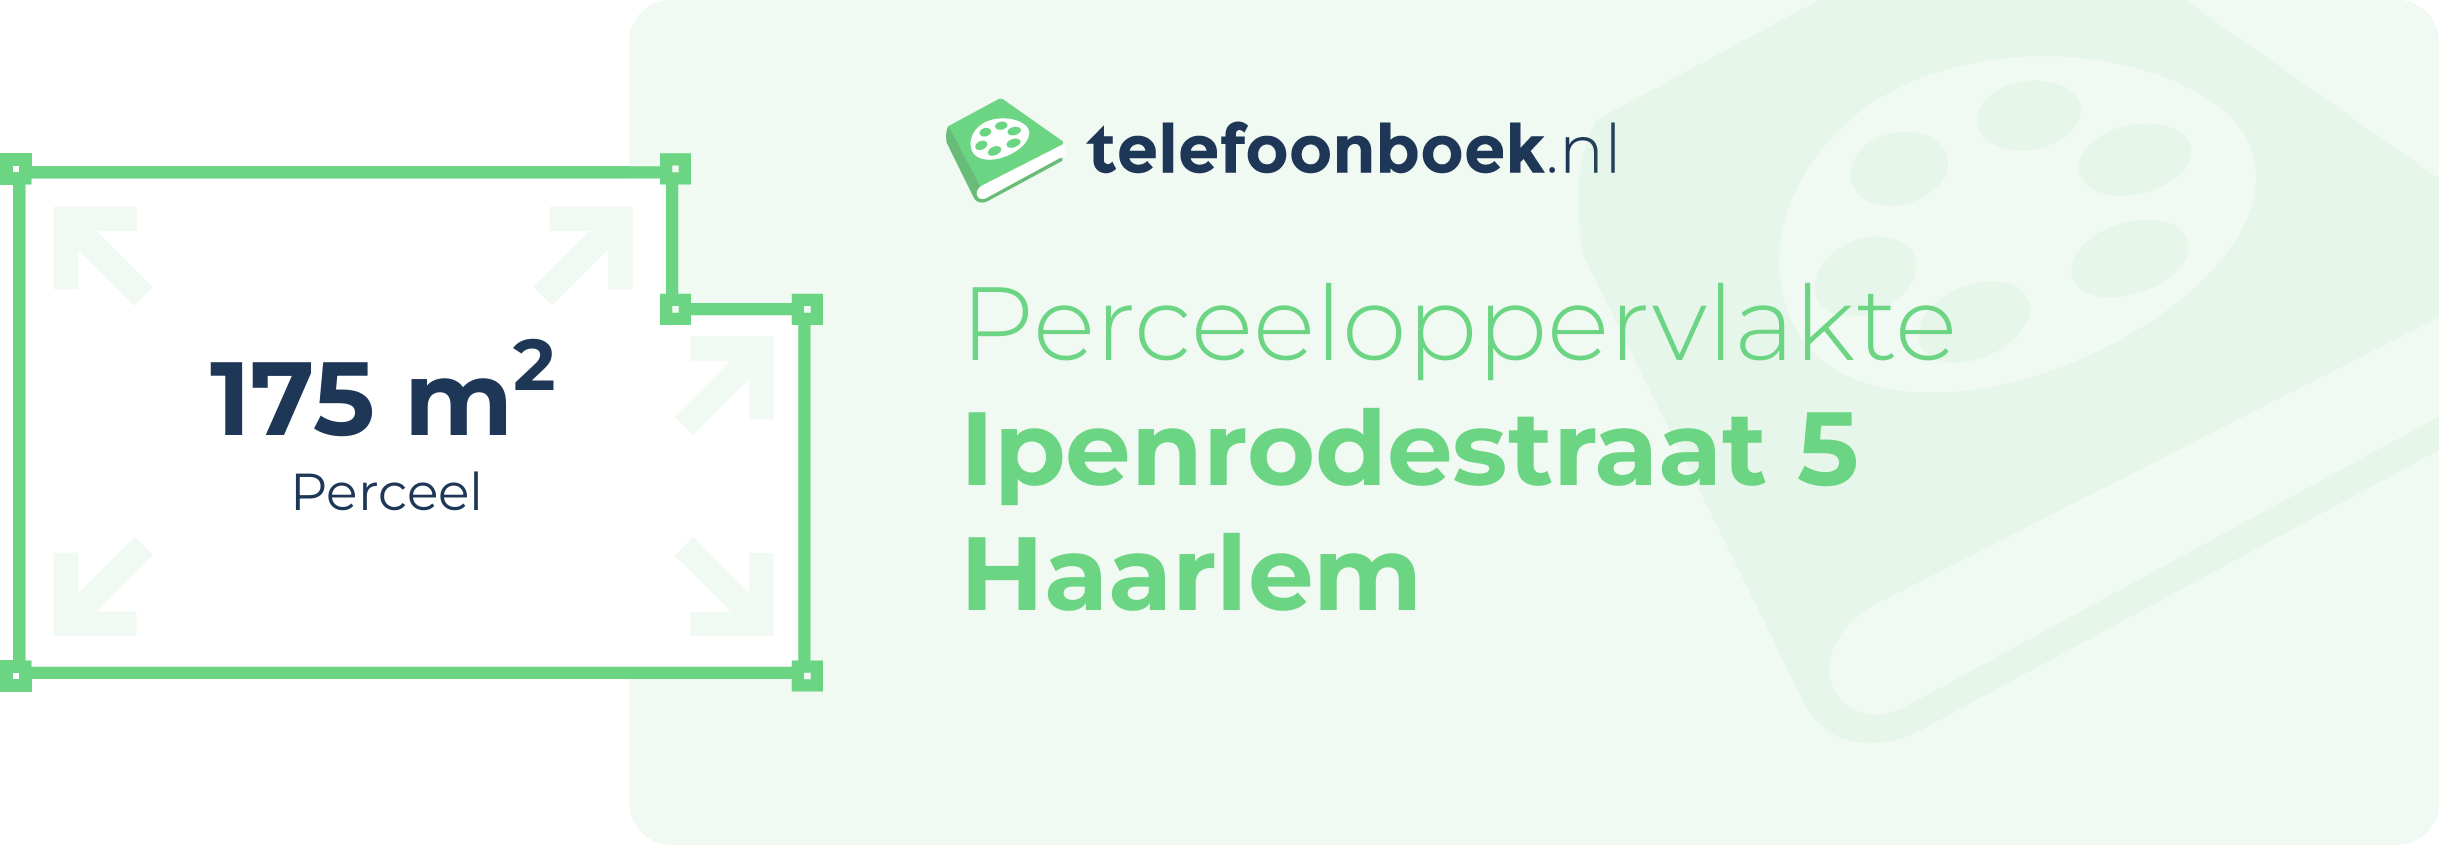 Perceeloppervlakte Ipenrodestraat 5 Haarlem